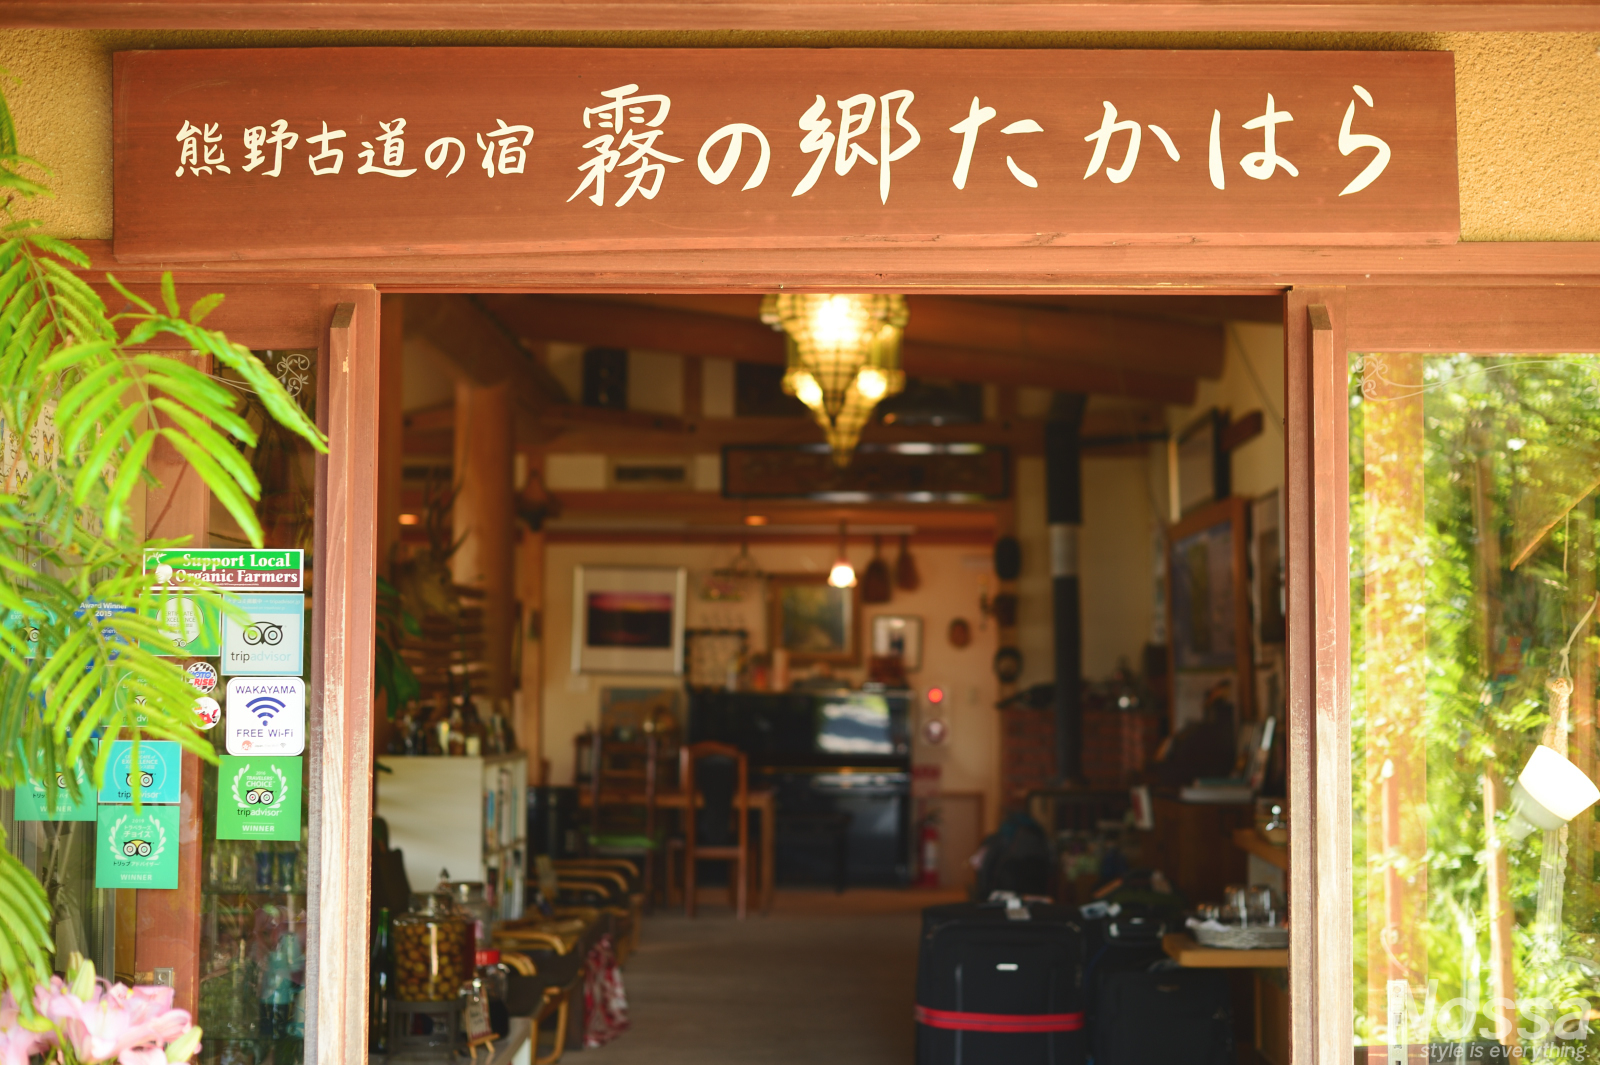 熊野古道の絶景宿「霧の郷たかはら」でコーヒーを【和歌山1泊2日観光旅行part5】